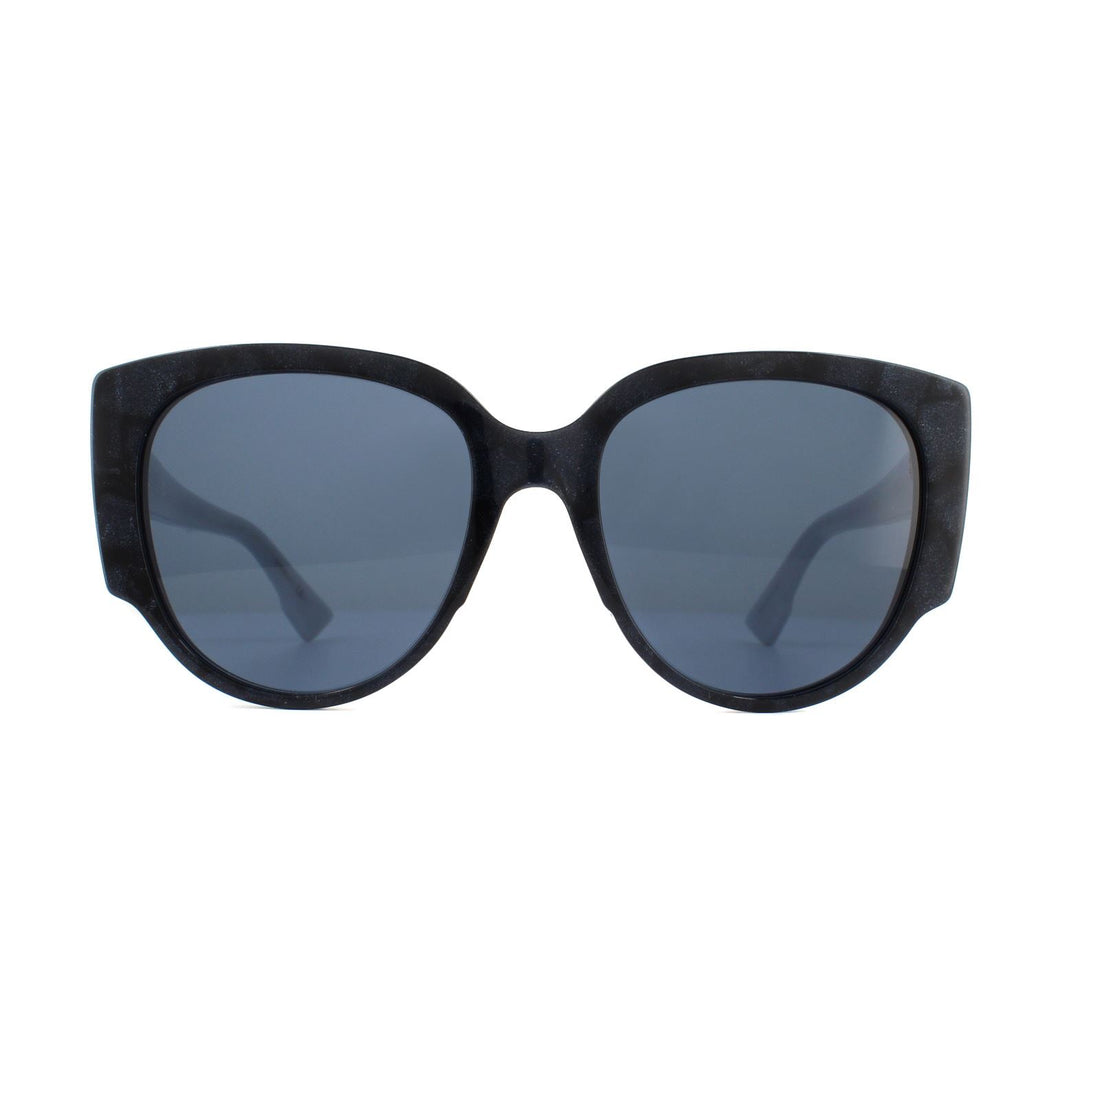 Dior Sunglasses Dior Night1 RIU 72 Blue Blue